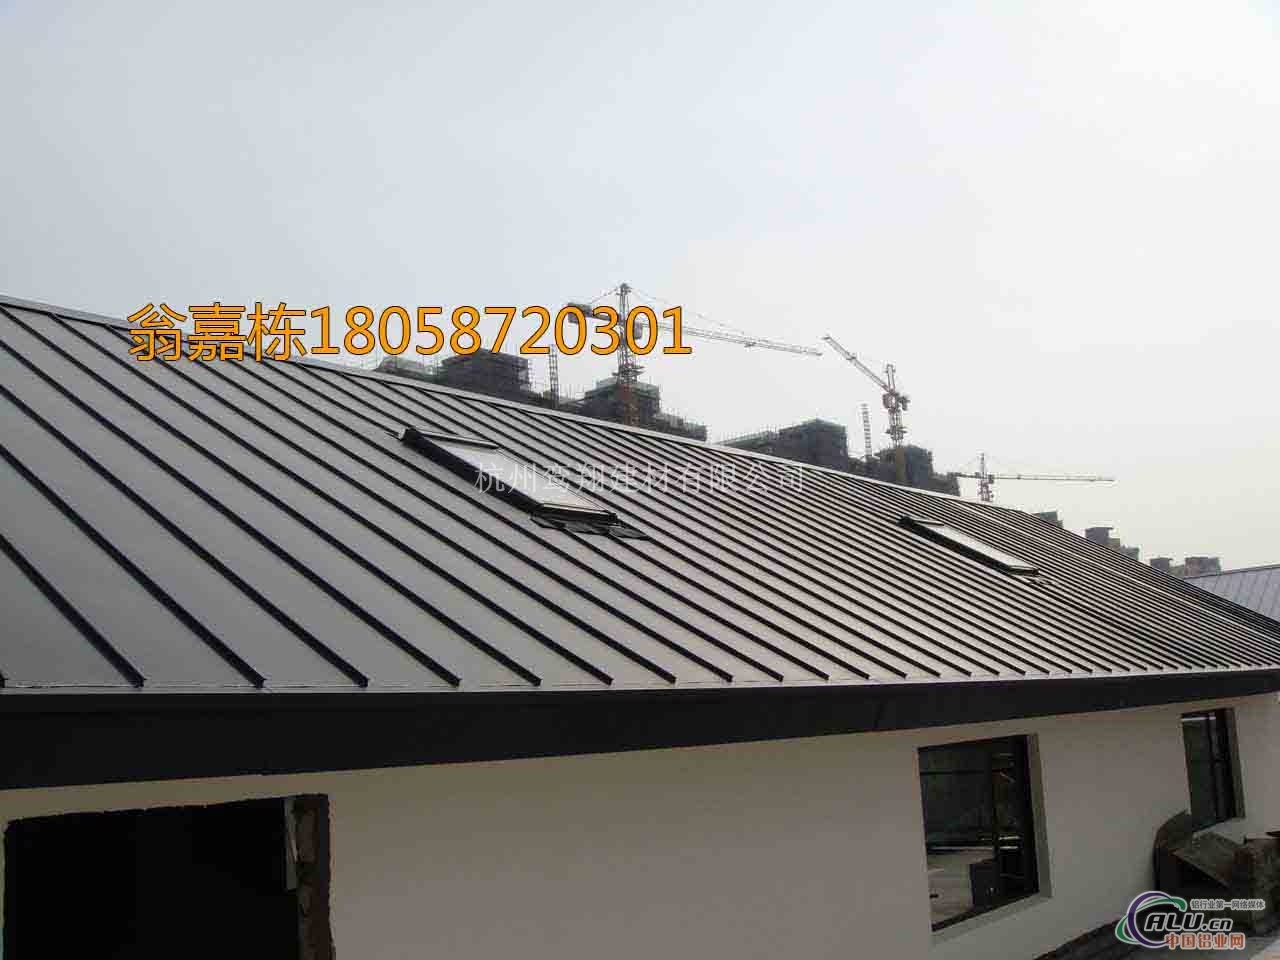 25530钛锌板金属屋面板